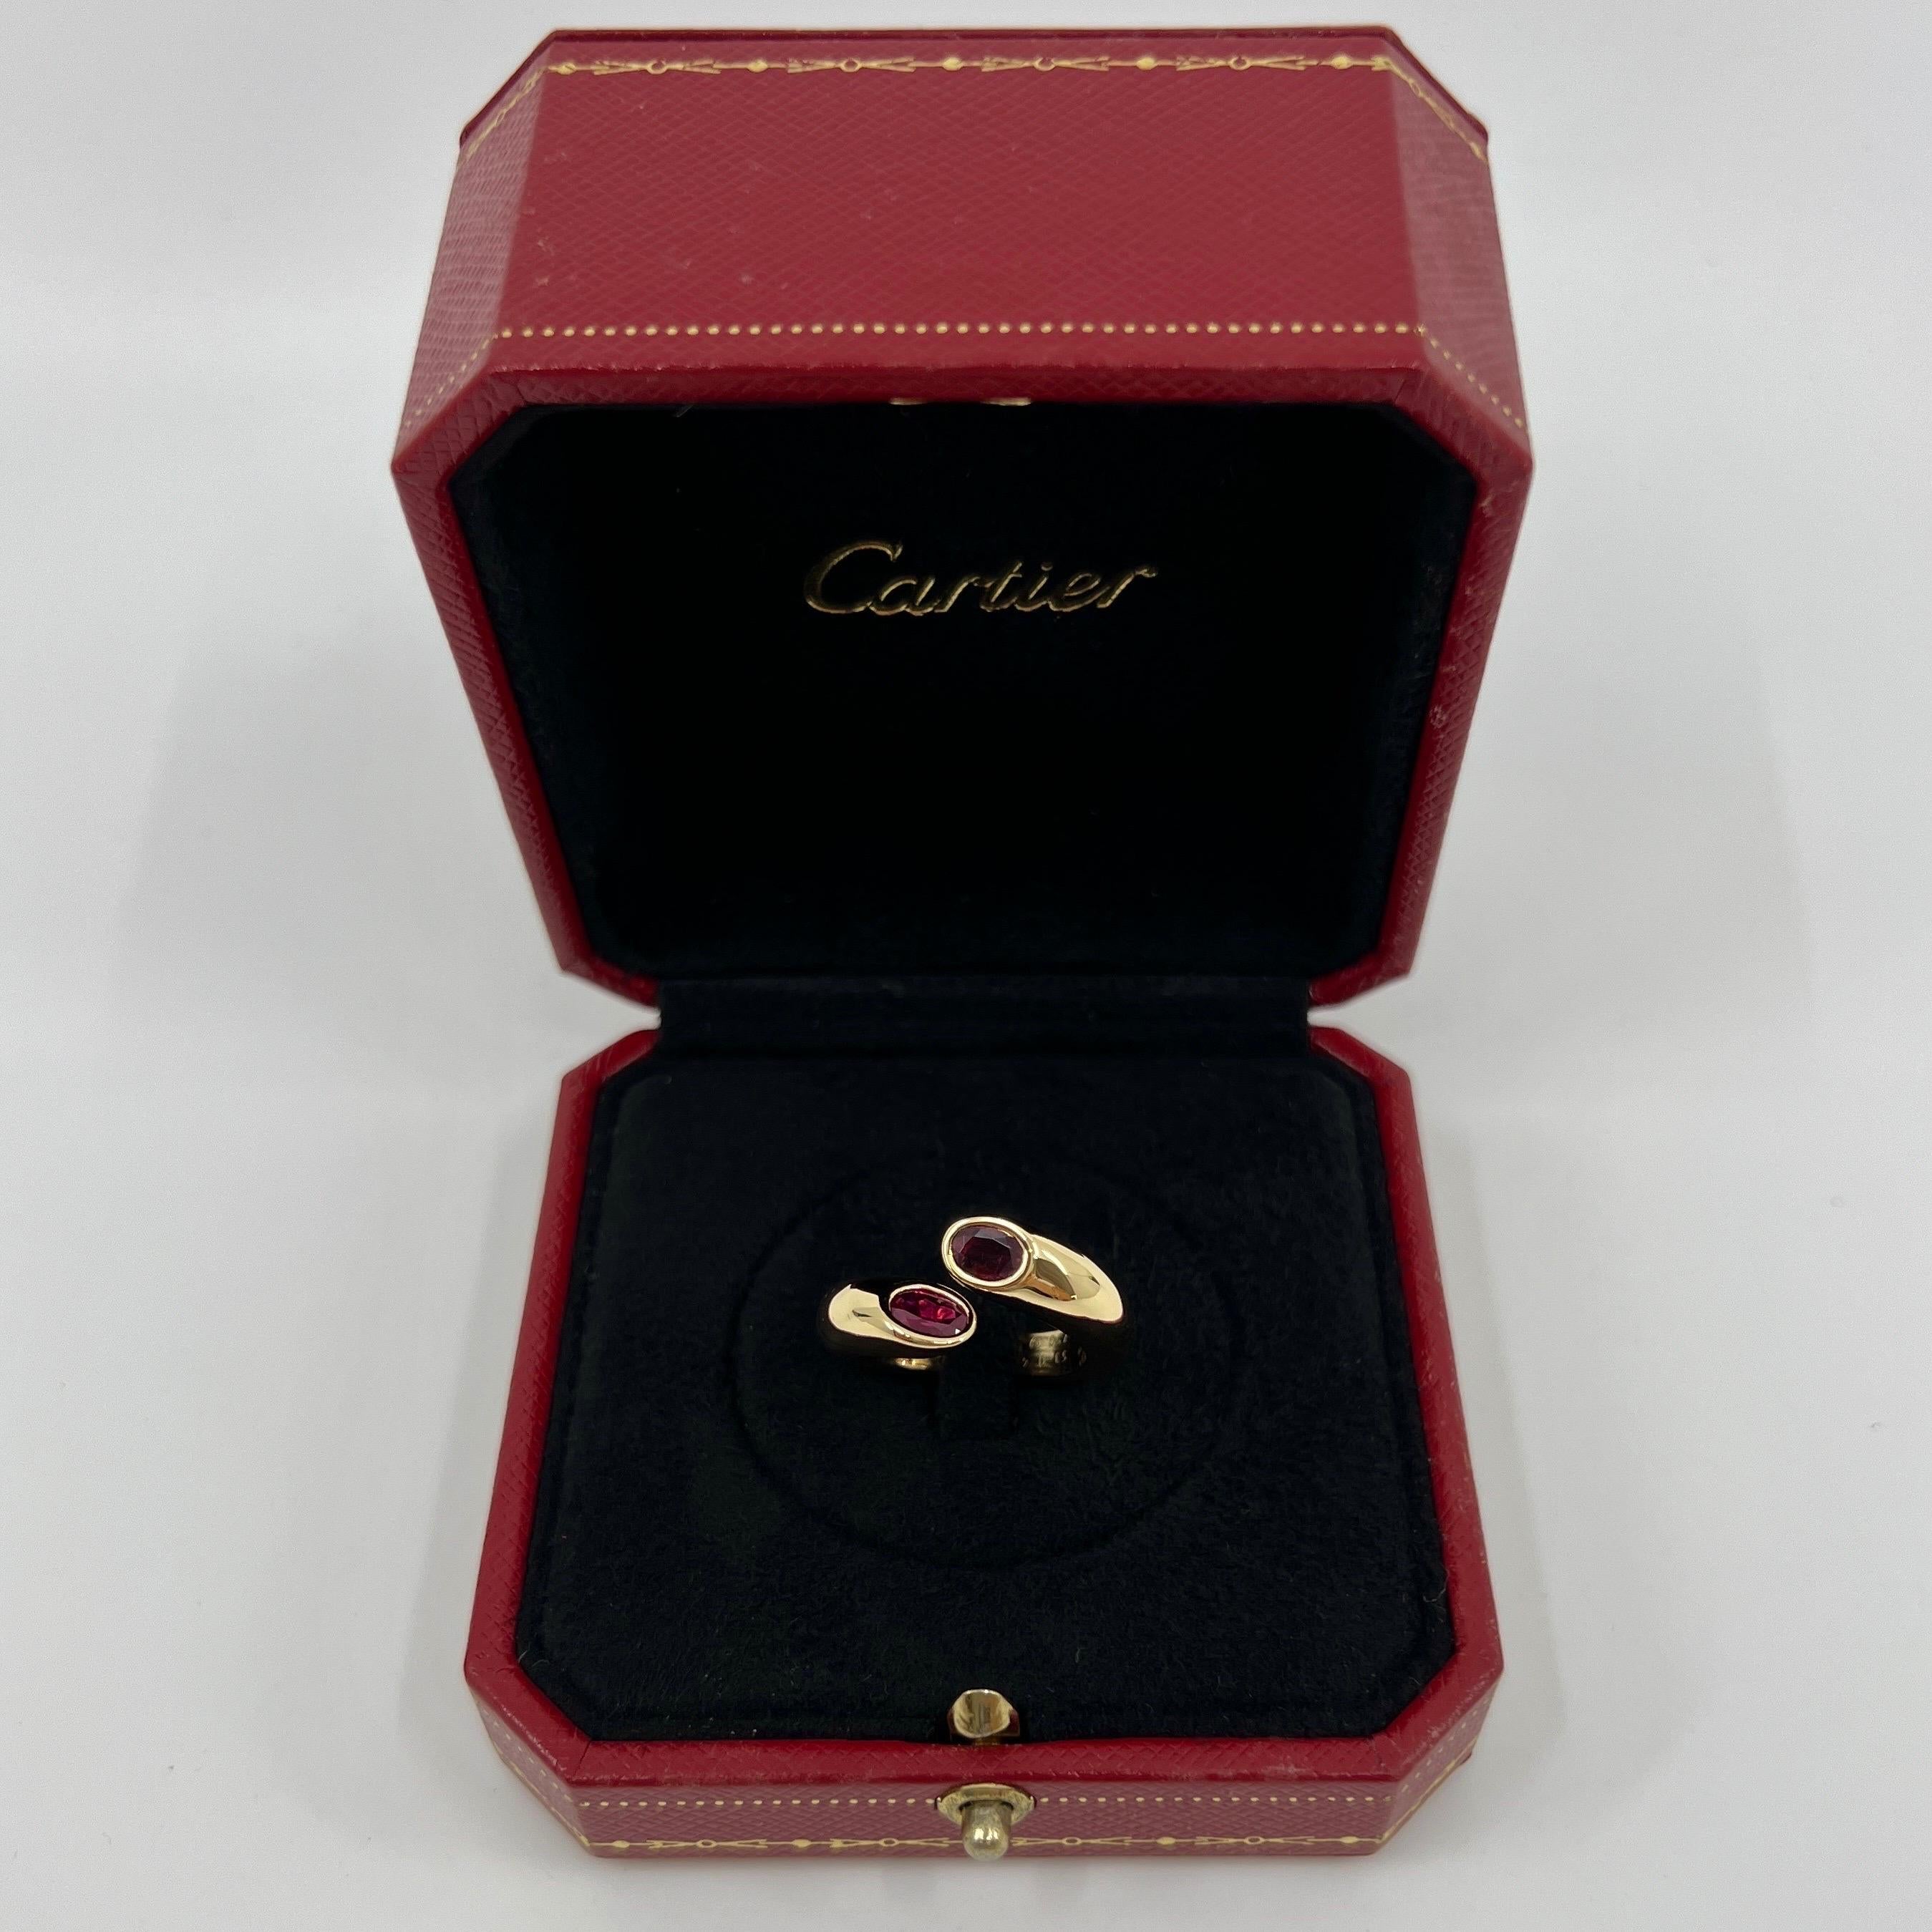 Vintage Cartier Oval Cut Red Ruby 18k Gelbgold Split Bypass Ring.

Atemberaubender Ring aus Gelbgold, besetzt mit 2 feinen, leuchtend roten Rubinen im Ovalschliff. Edle Schmuckhäuser wie Cartier verwenden nur die feinsten Edelsteine, und diese